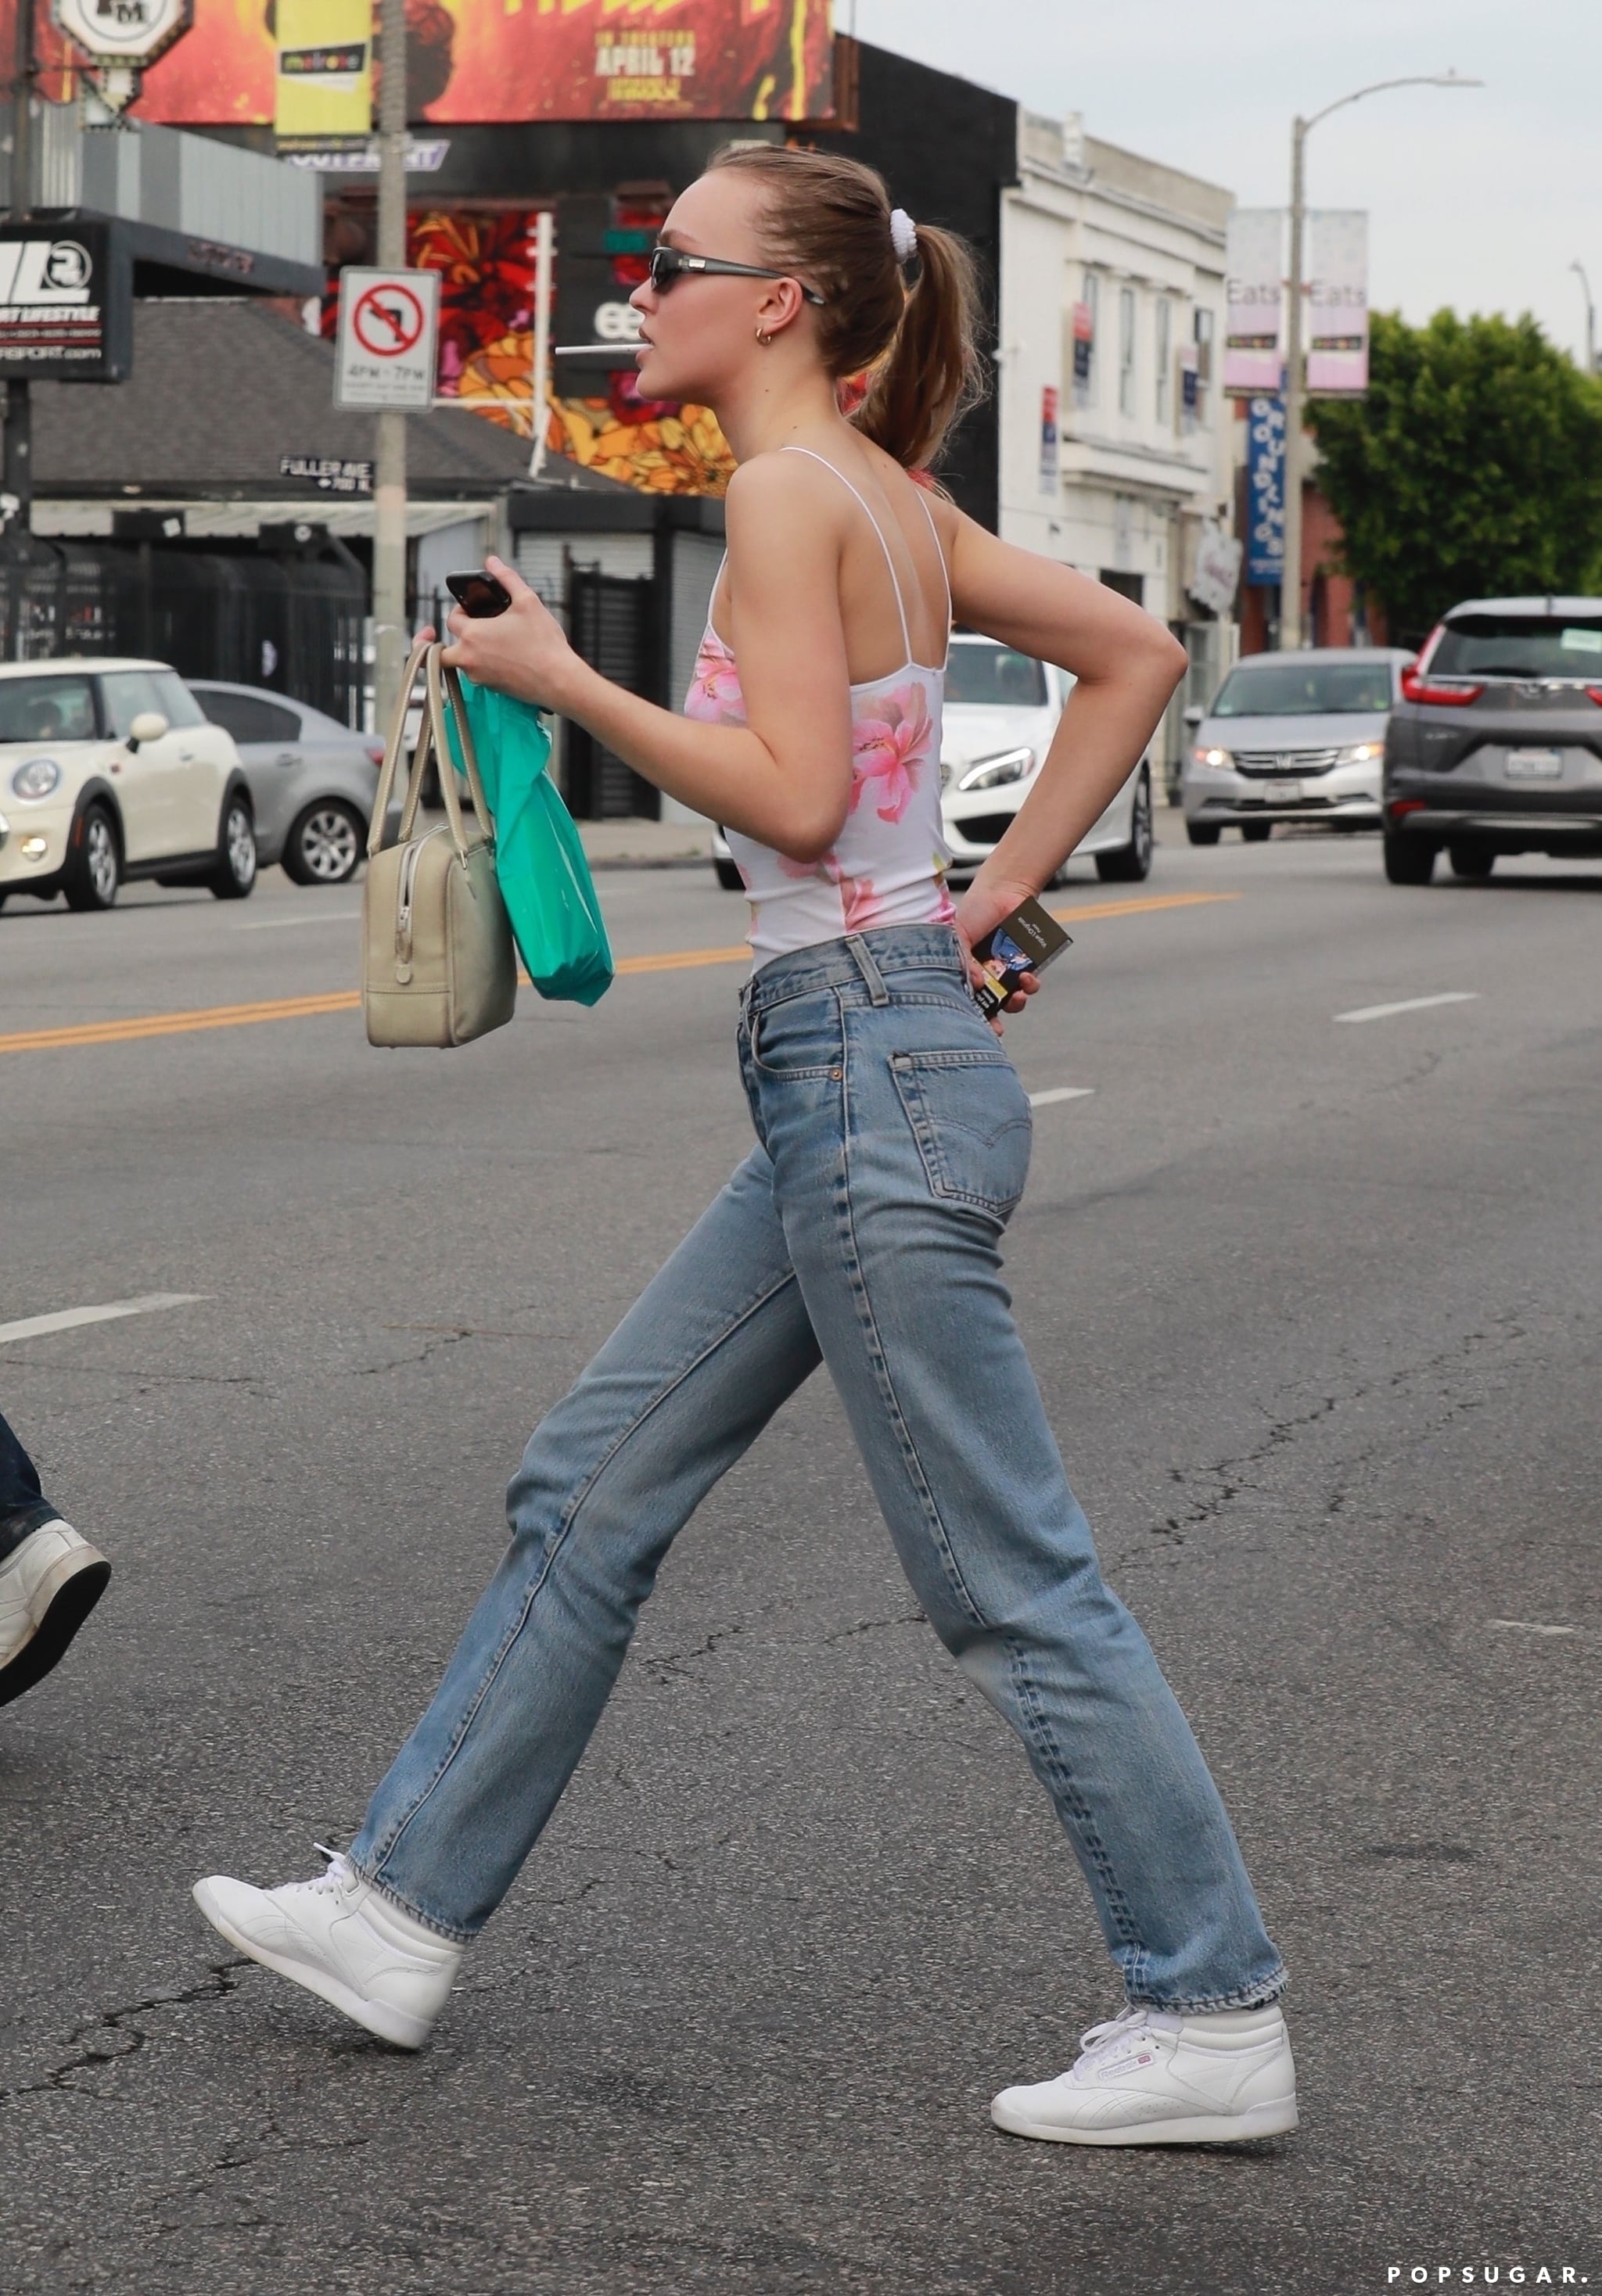 Lily-Rose Depp Jeans and Floral Bodysuit | POPSUGAR Fashion